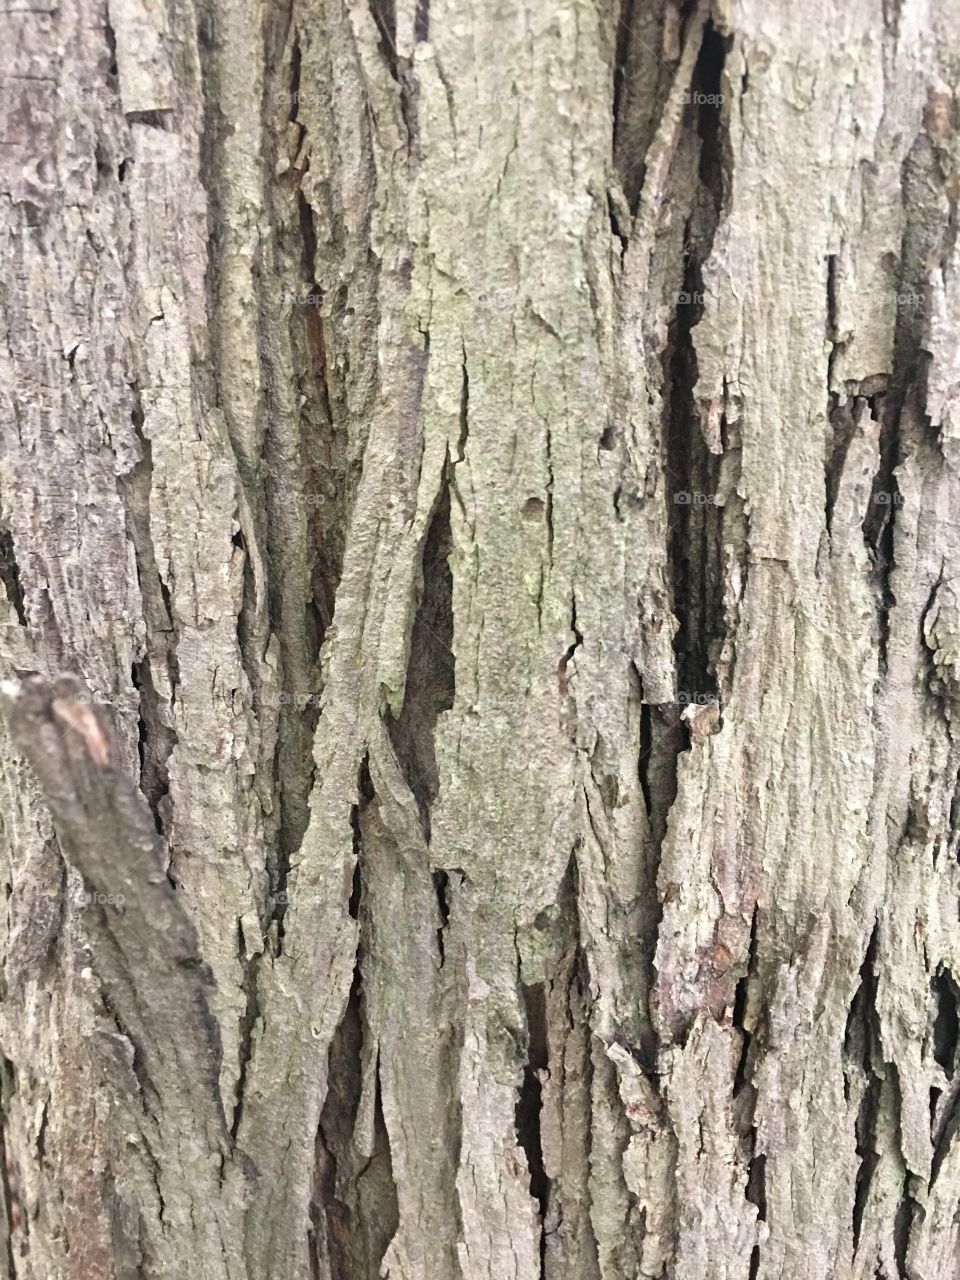 Hickory bark